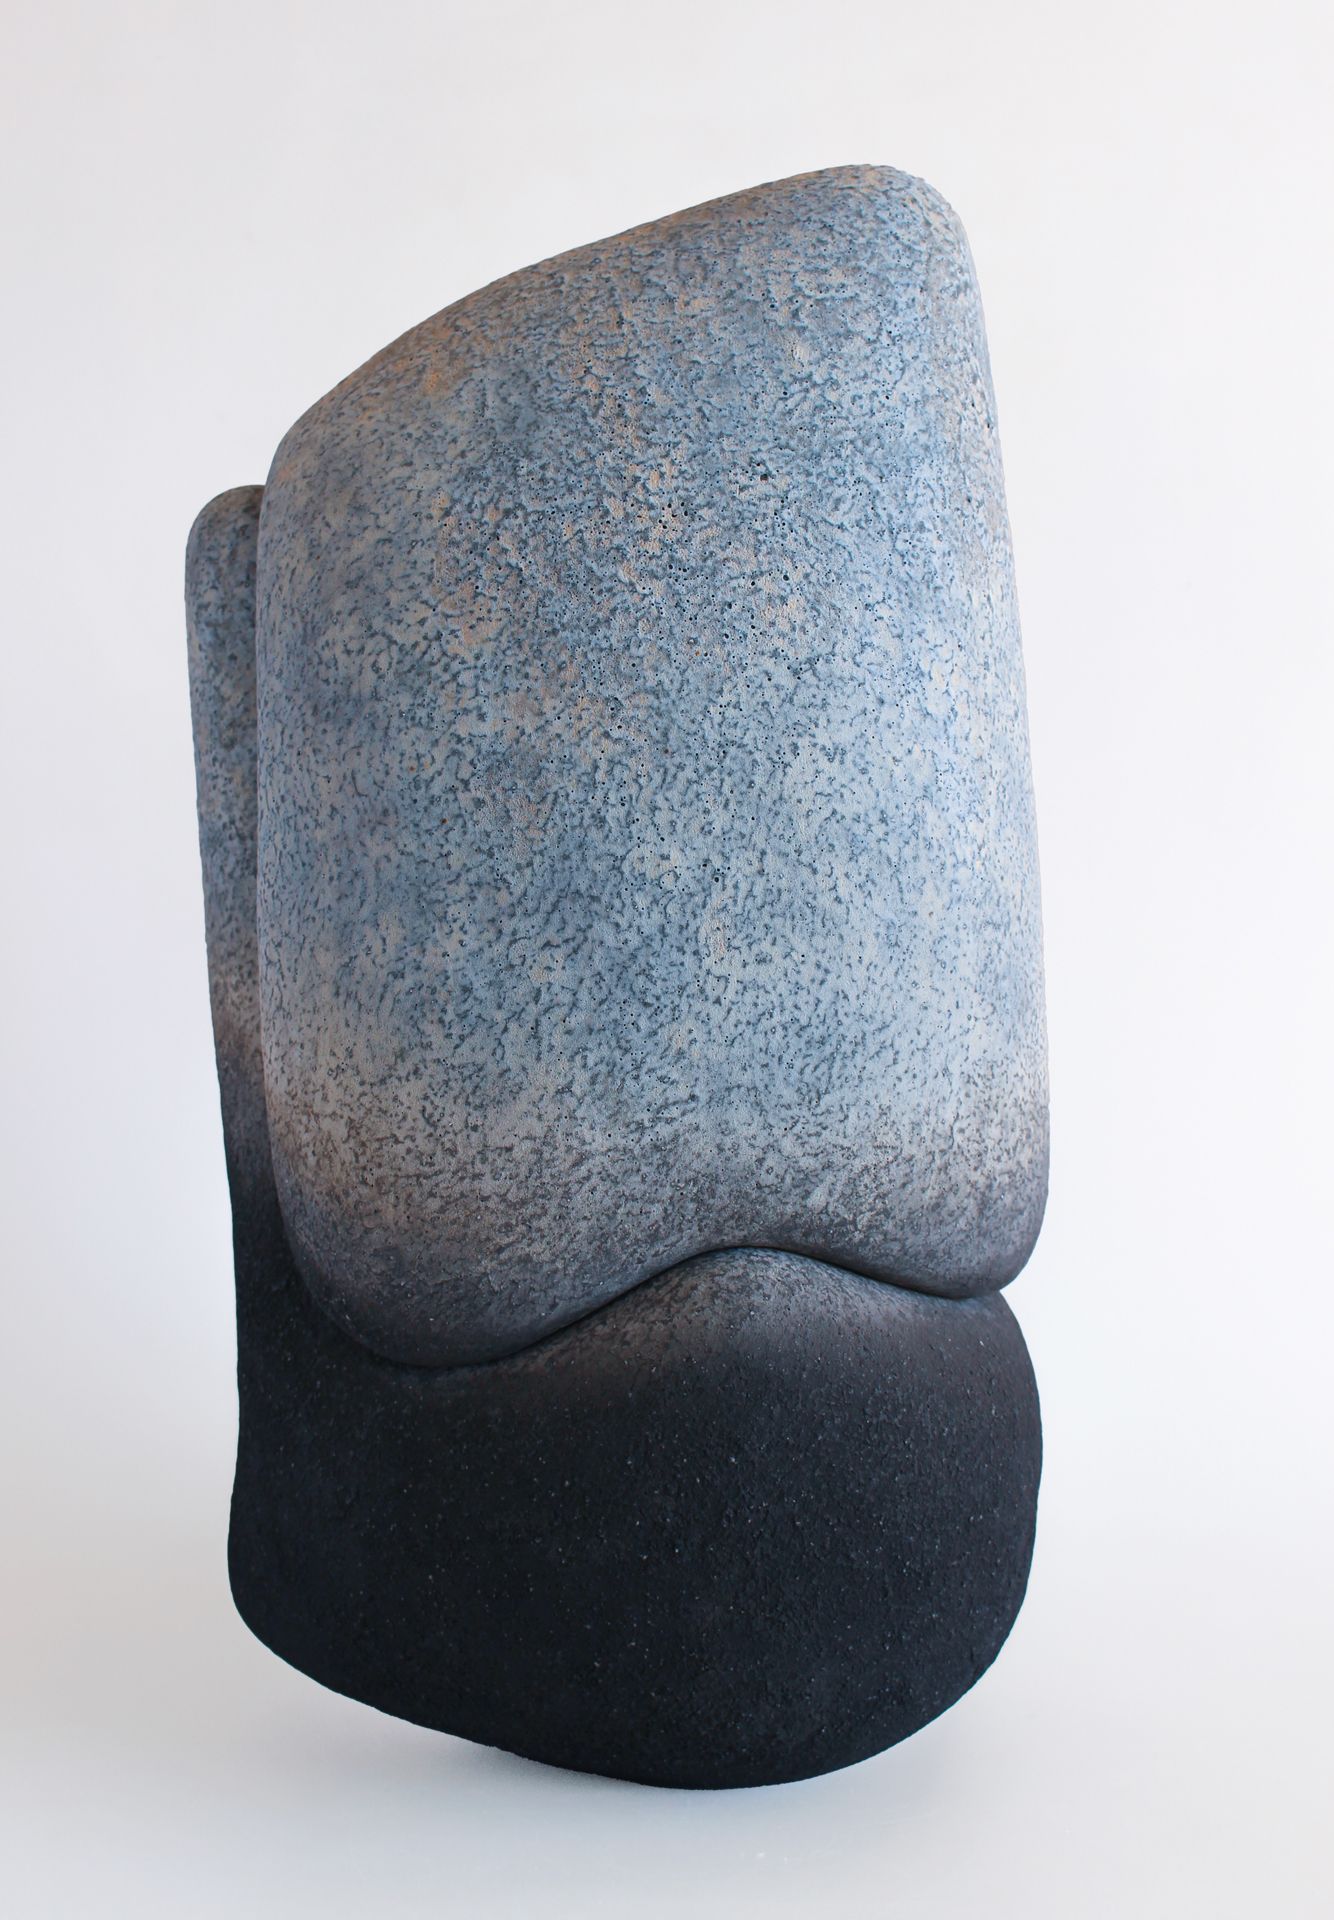 Sculpture en céramique de l'artiste japonais Kenji Gomi. De forme verticale, elle est composée de deux parties qui s'emboîtent parfaitement. L'œuvre arbore une texture évoquant des roches, avec des teintes bleues dues au cobalt ainsi que des parties noires obtenues par enfumage.